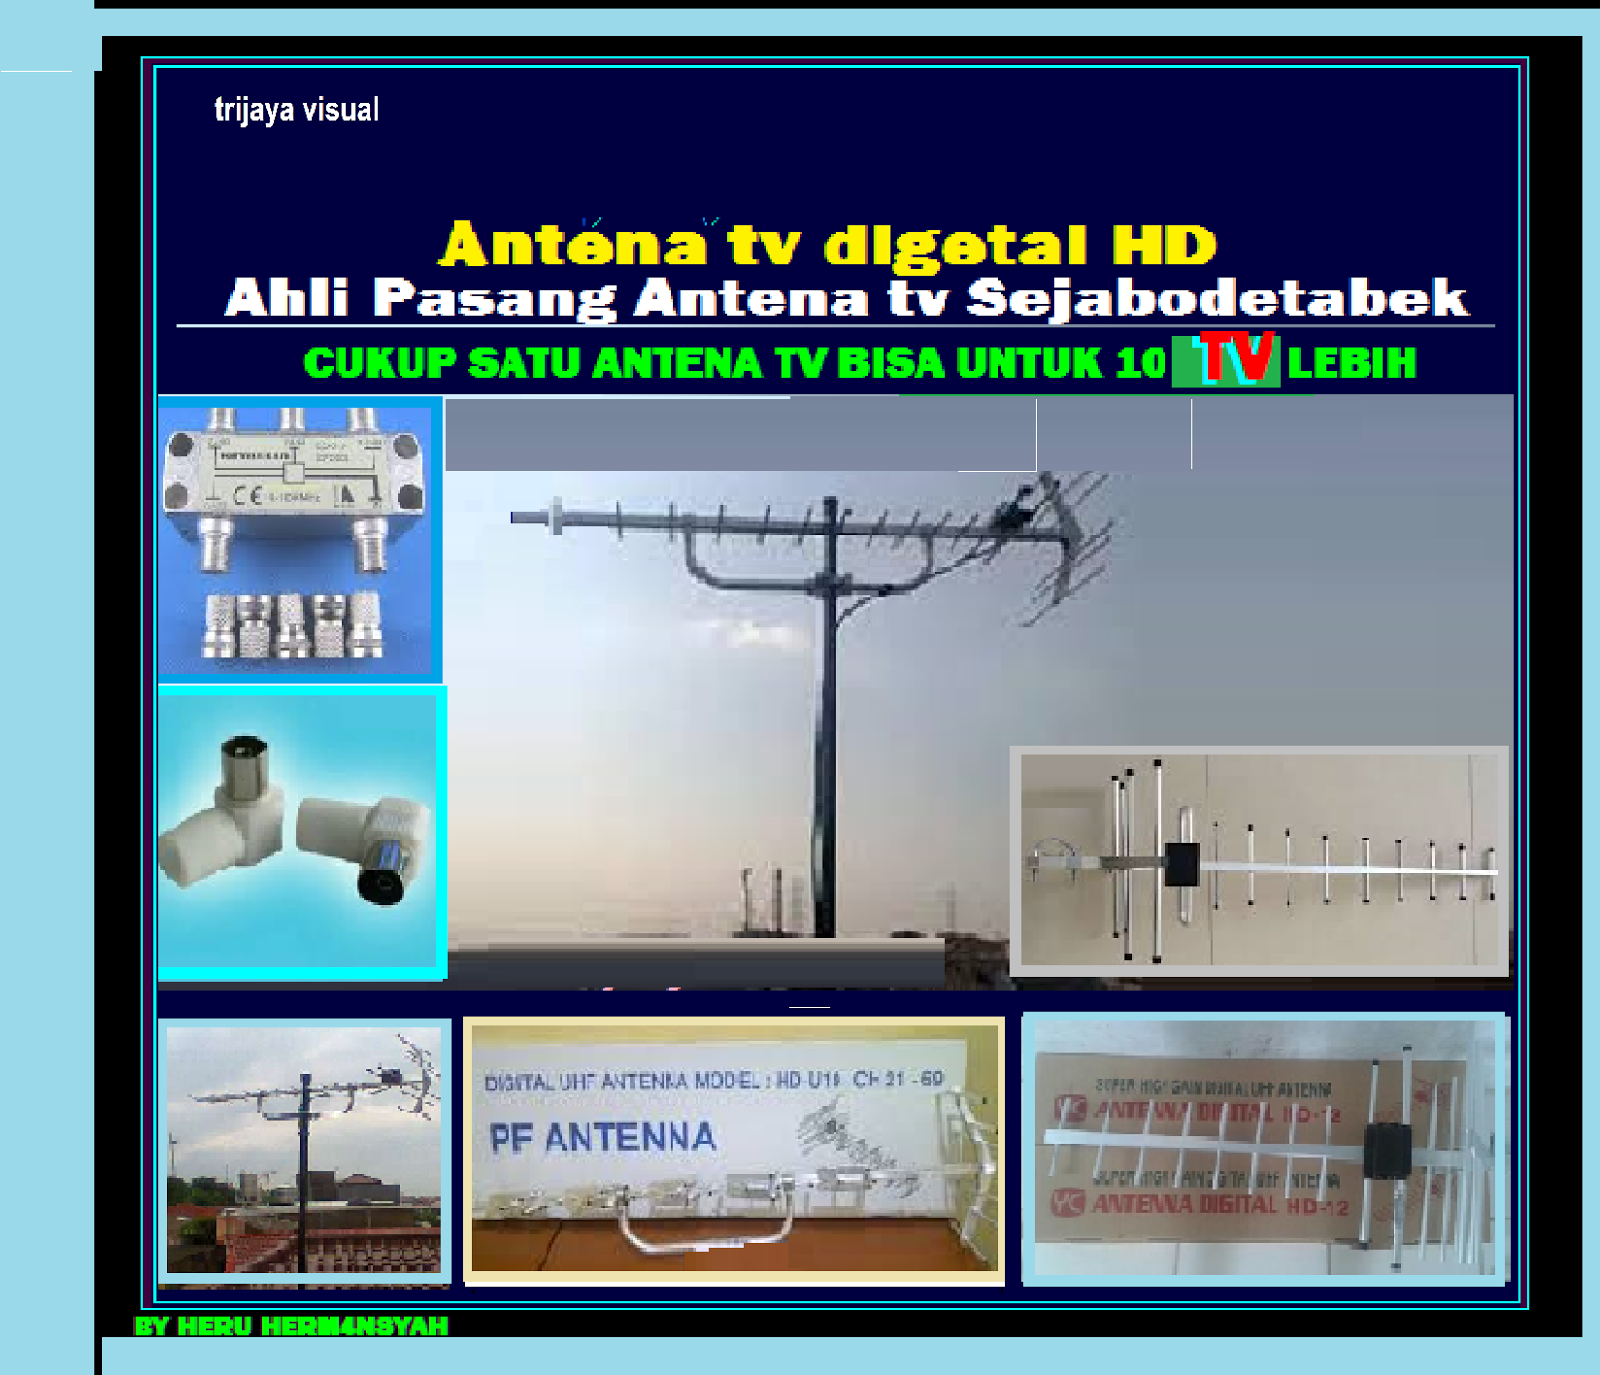 Jasa Pasang Antena tv Parabola dan camera cctv tangerang / serpong bsd